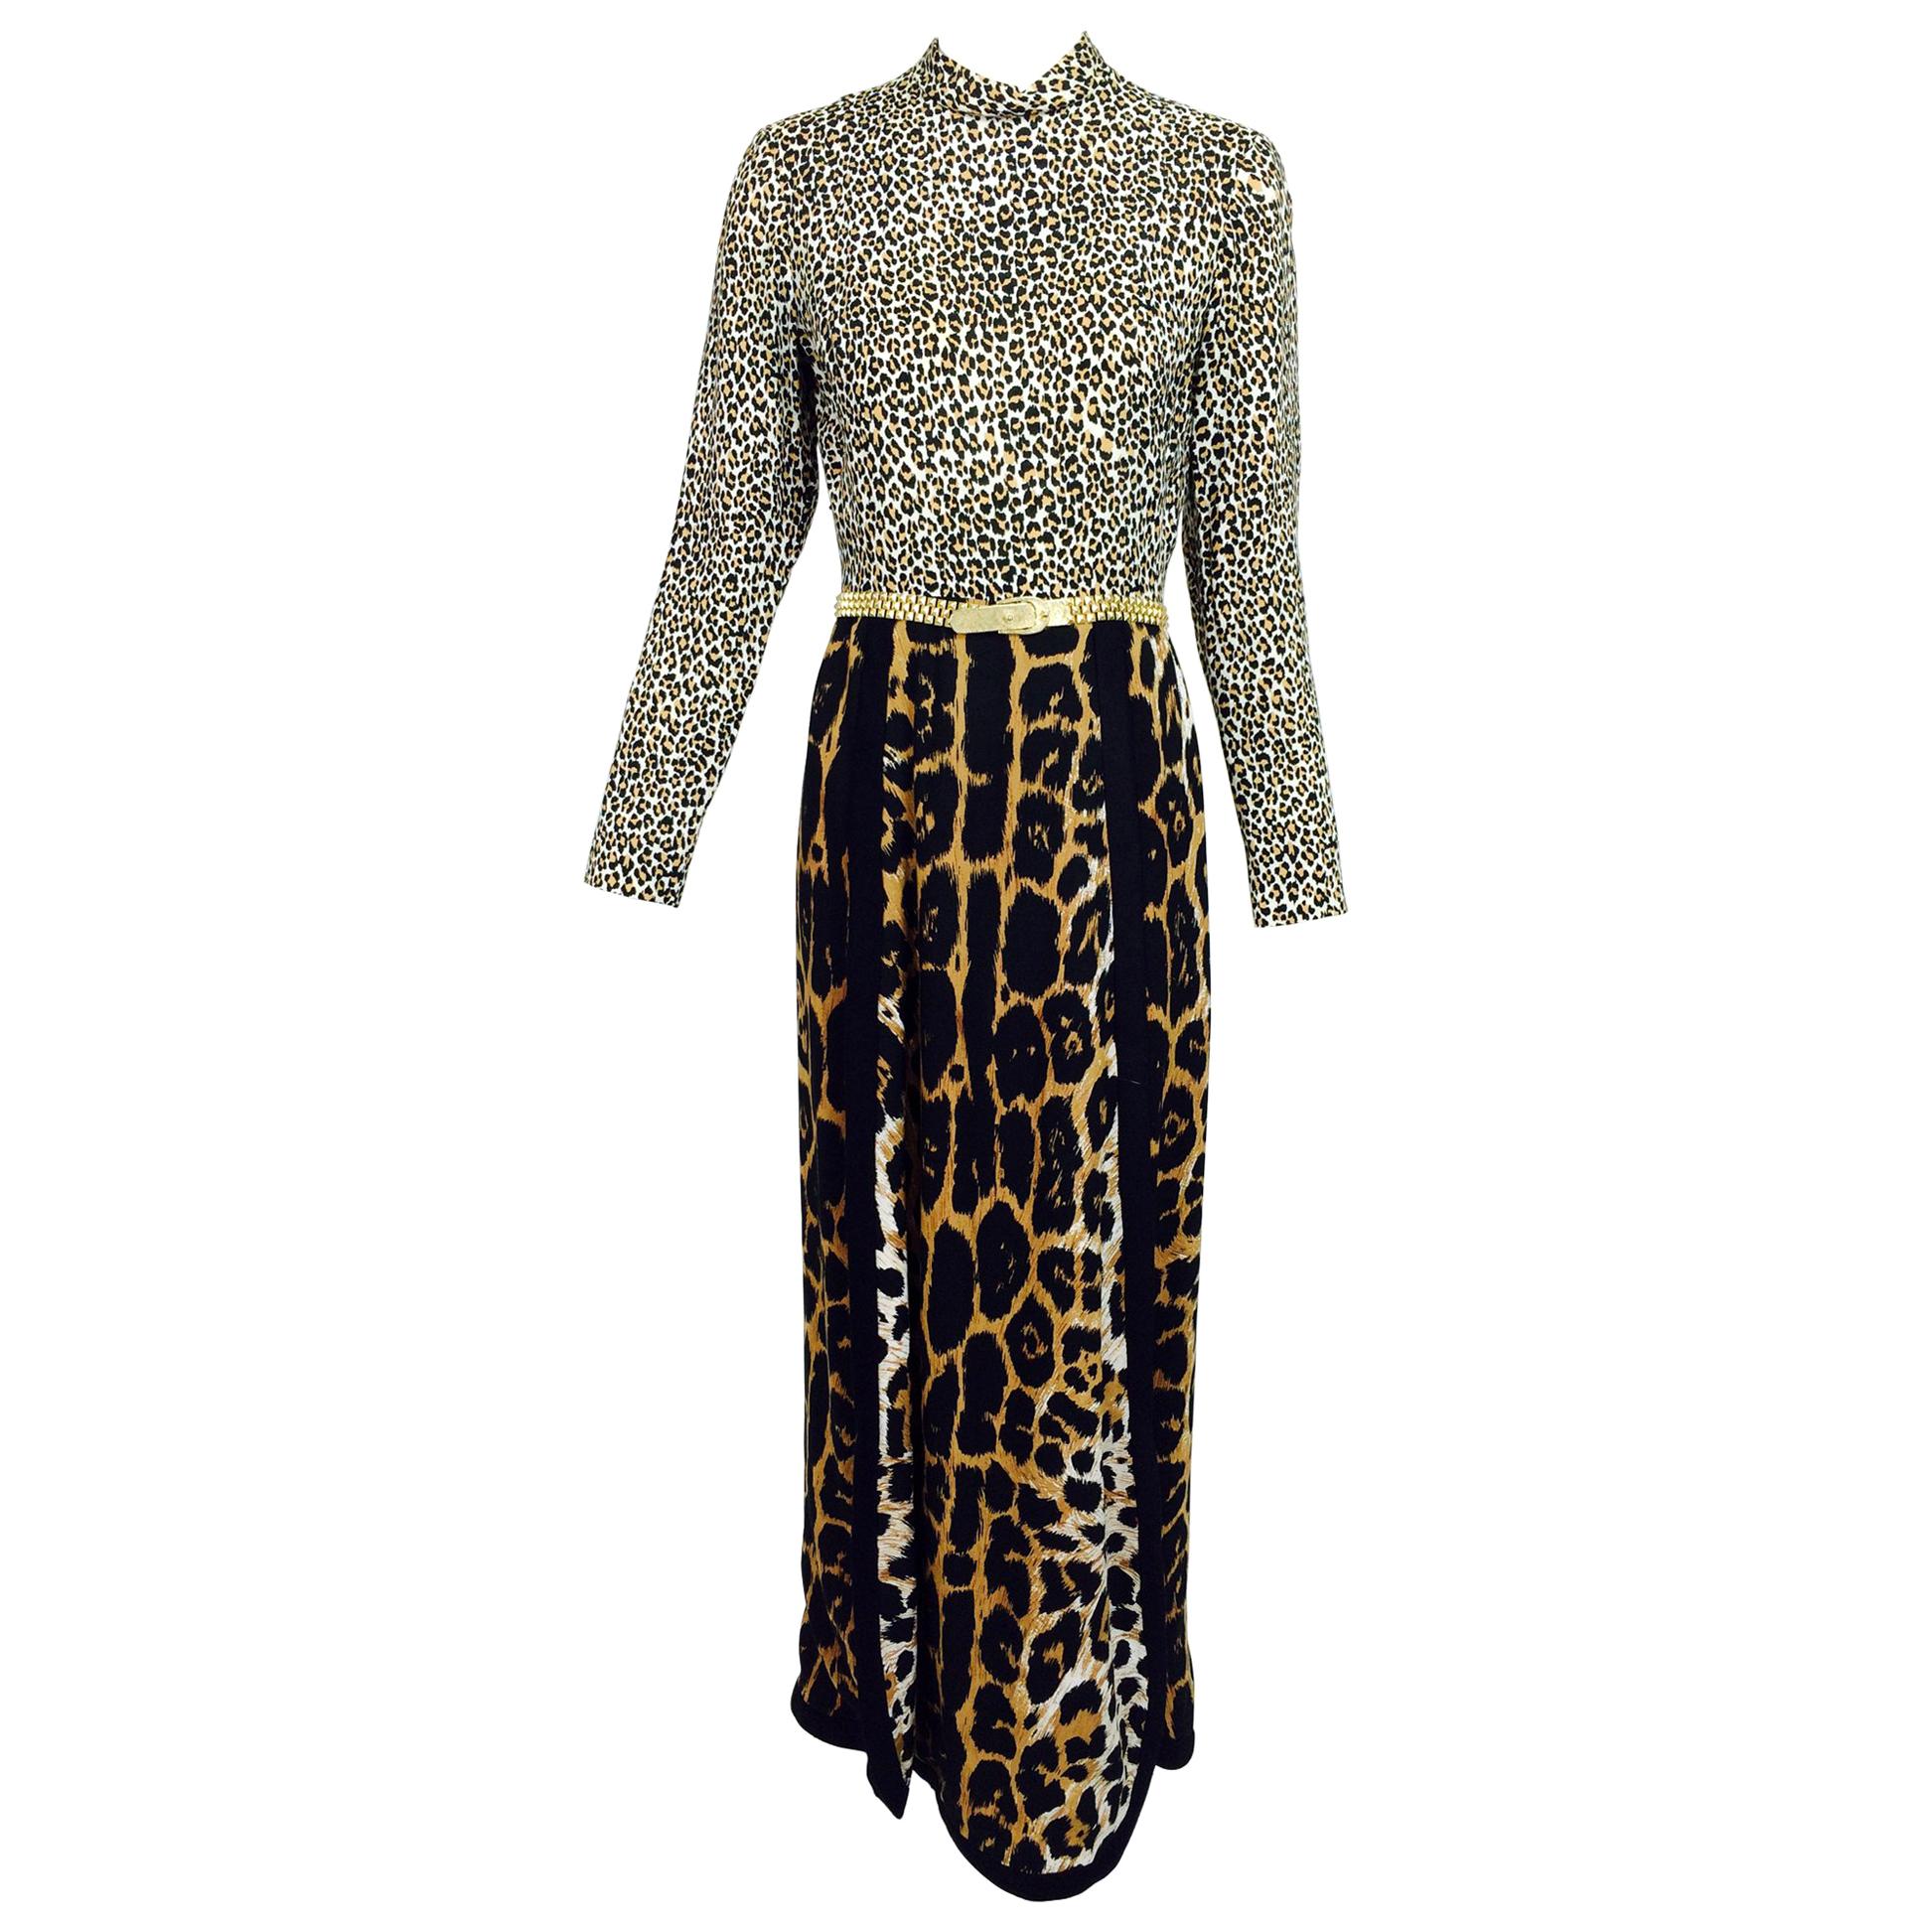 Martha Palm Beach Leopard Print Maxi dress 1970s